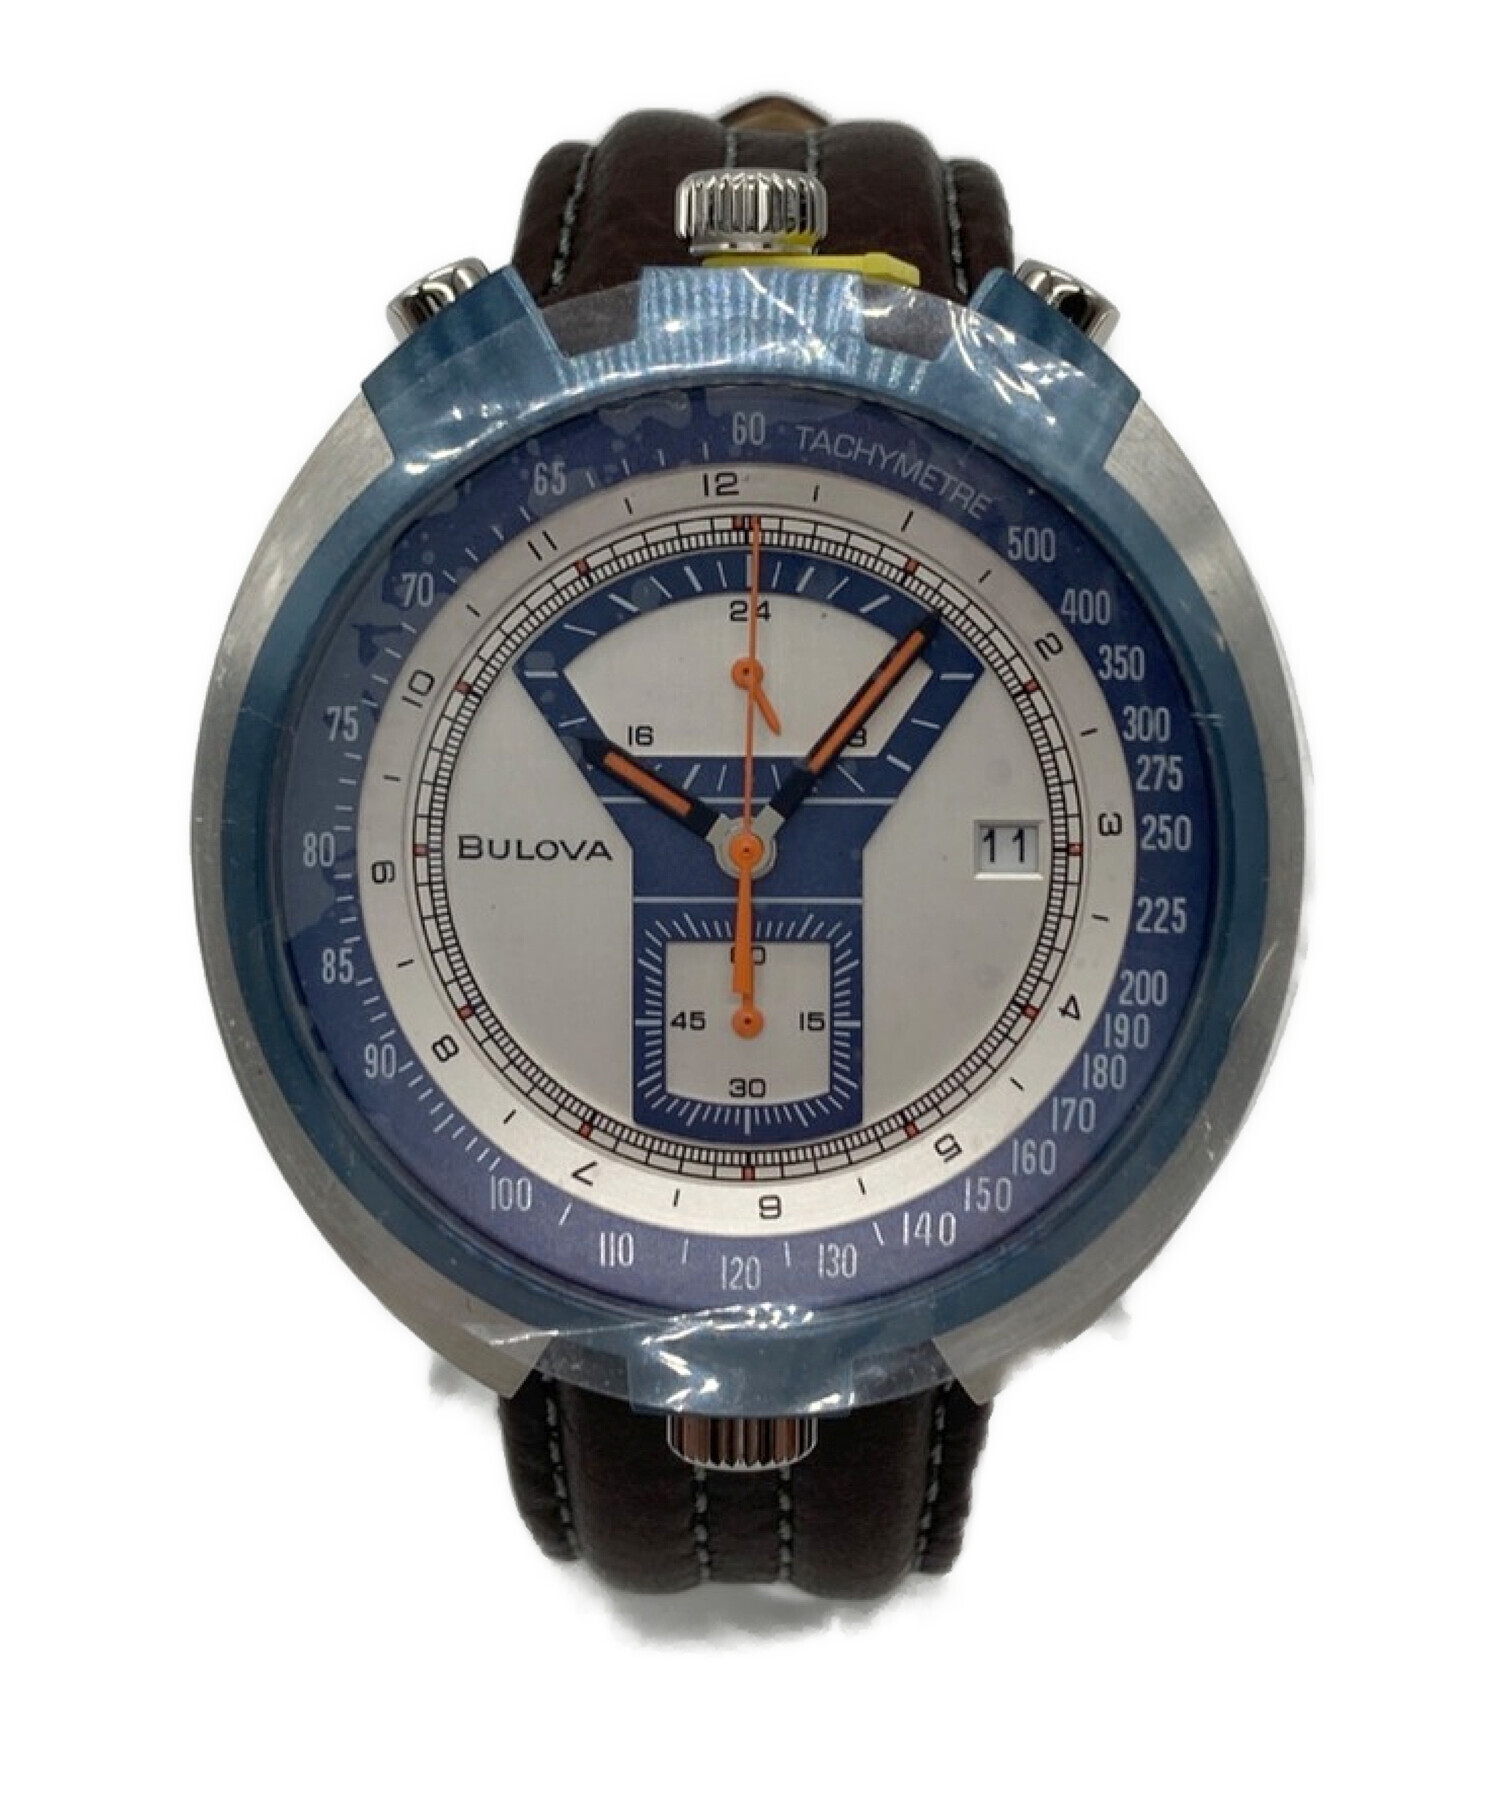 腕時計 ブローバクロノグラフultra rare bulova made the in 1940s chronograph